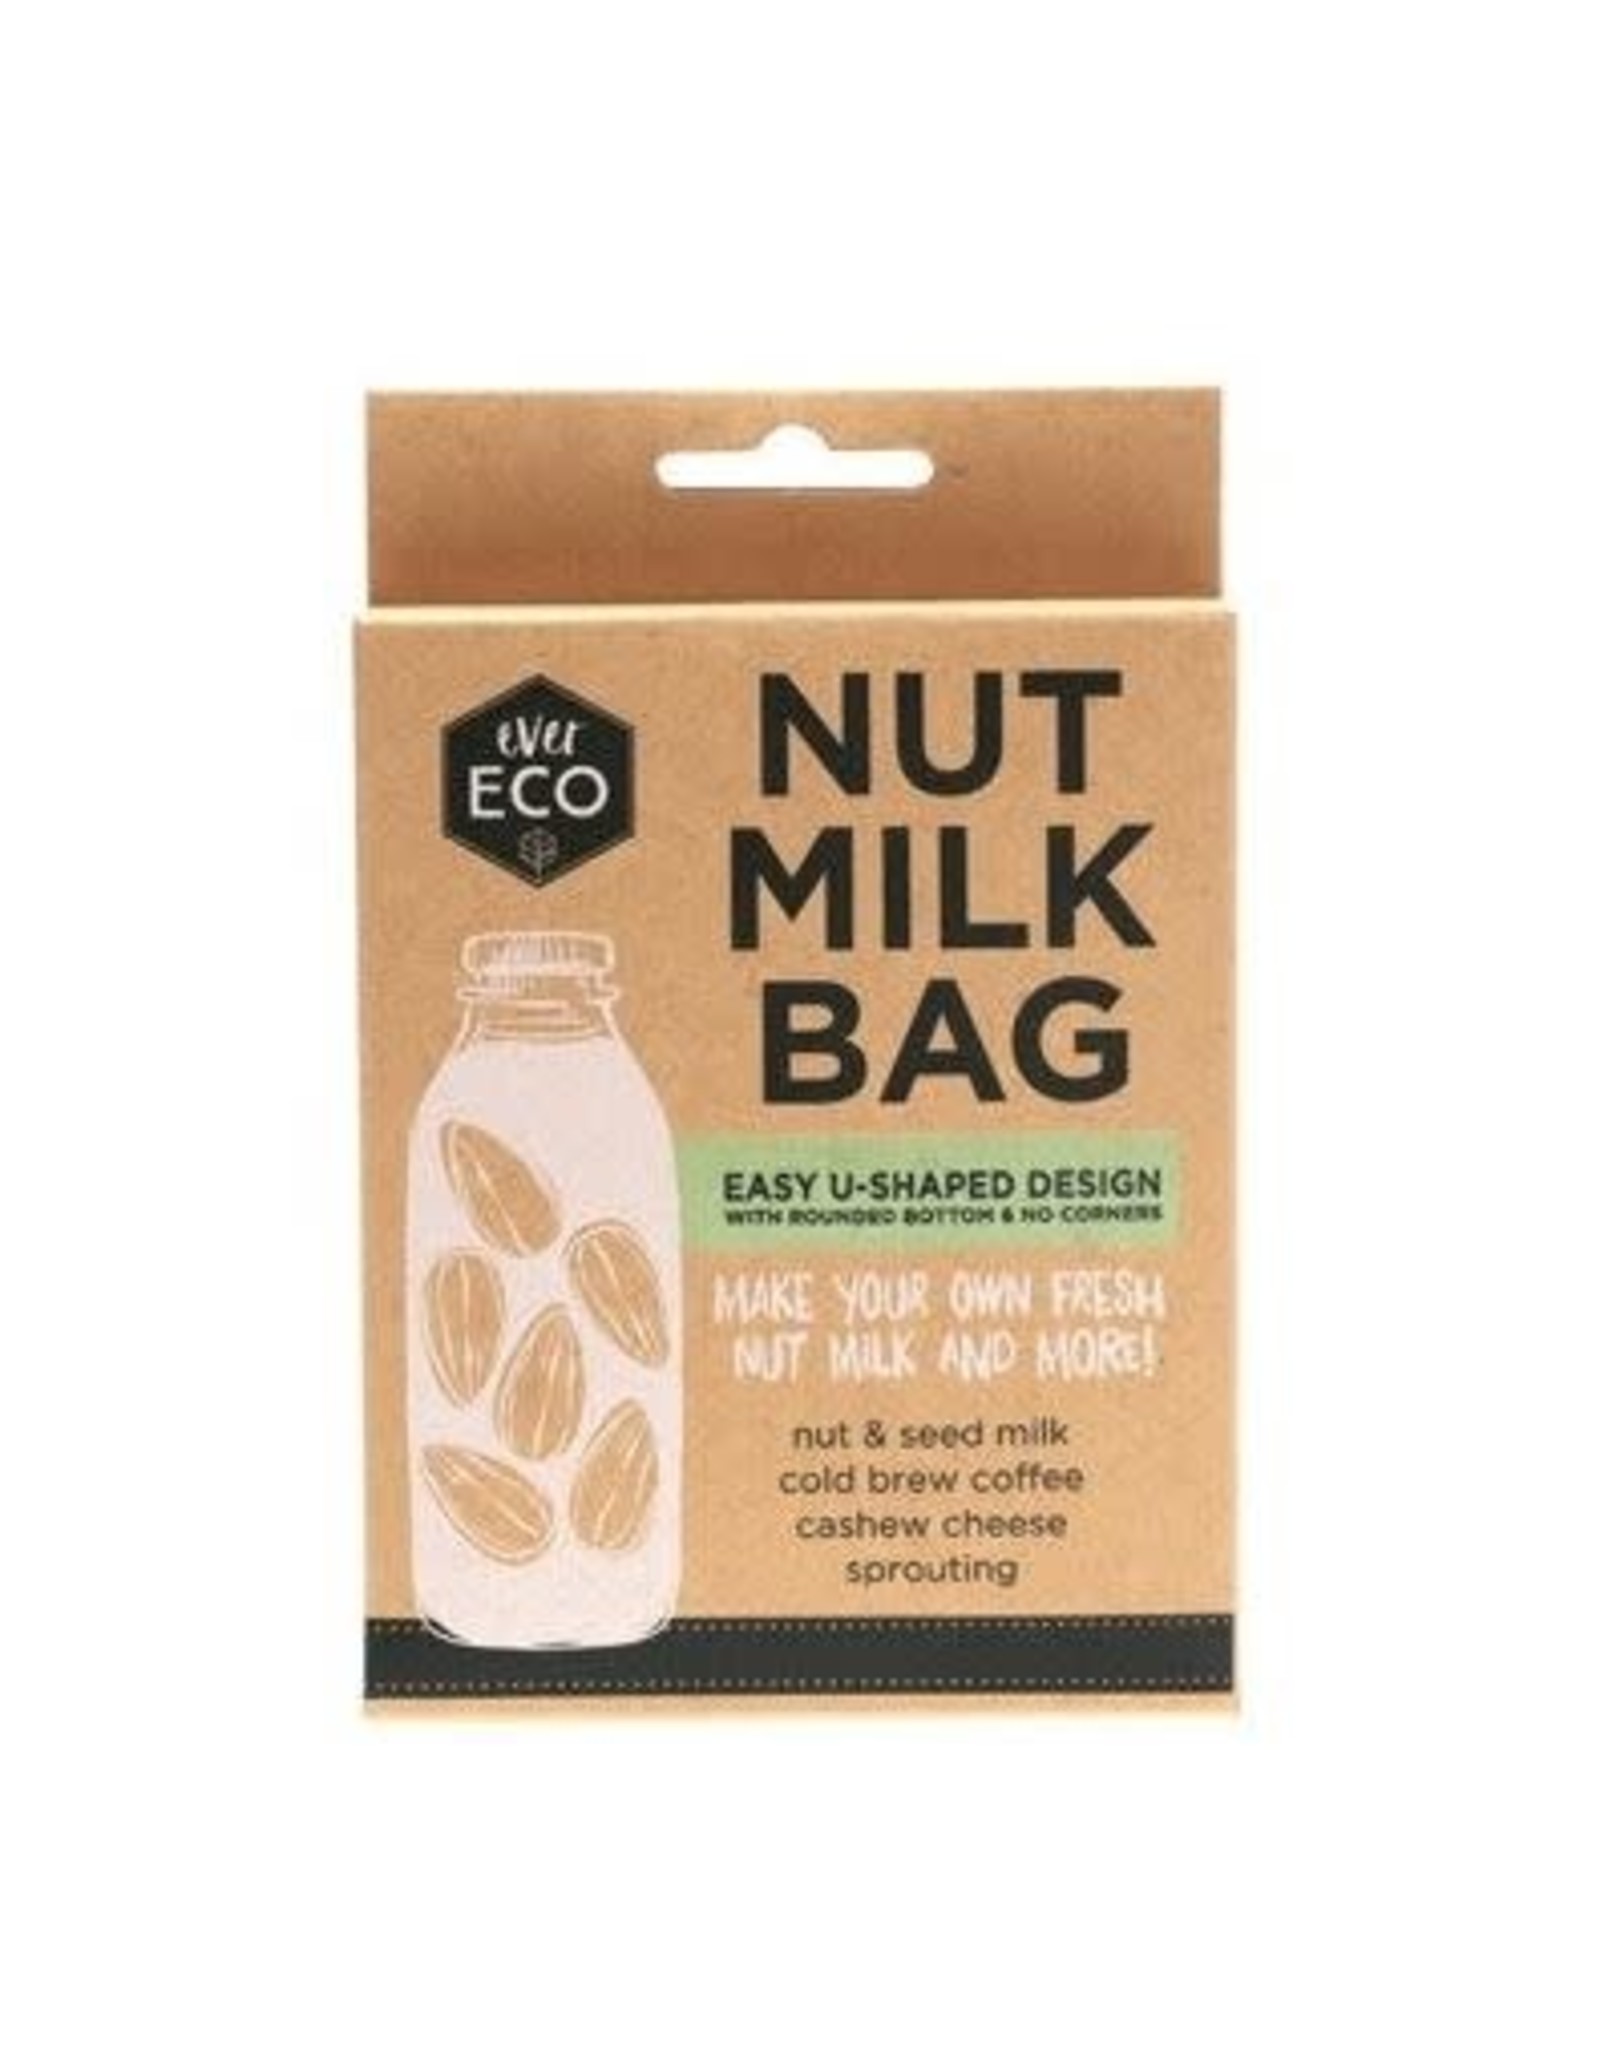 Ever Eco Nut Milk Bag  U-Shaped Design